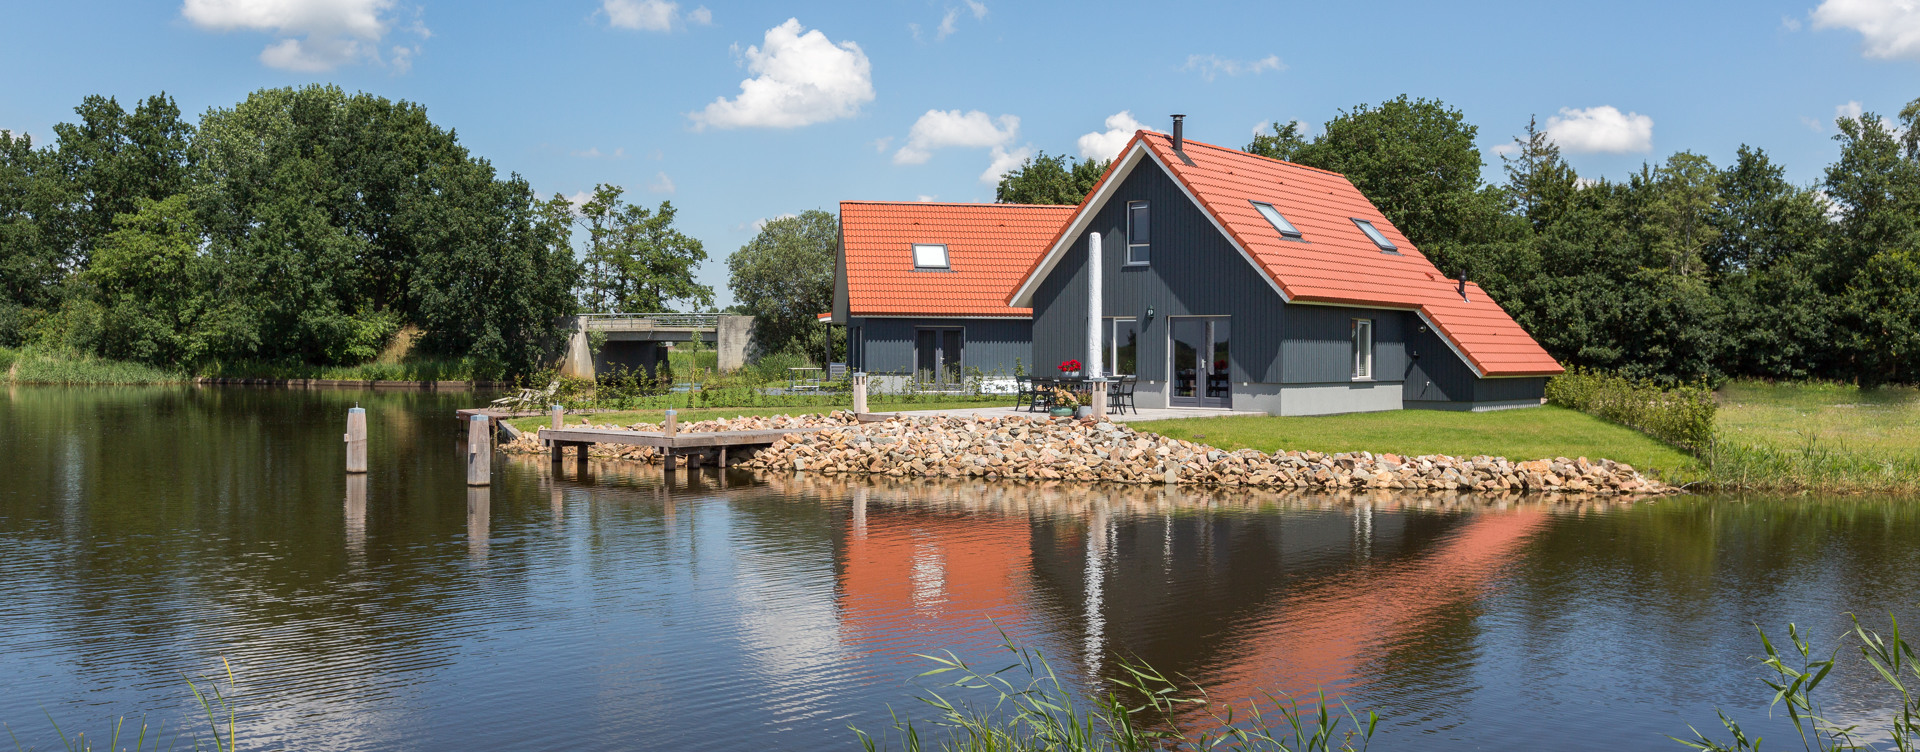 Beleef een ontspannen verblijf aan het water in Friesland